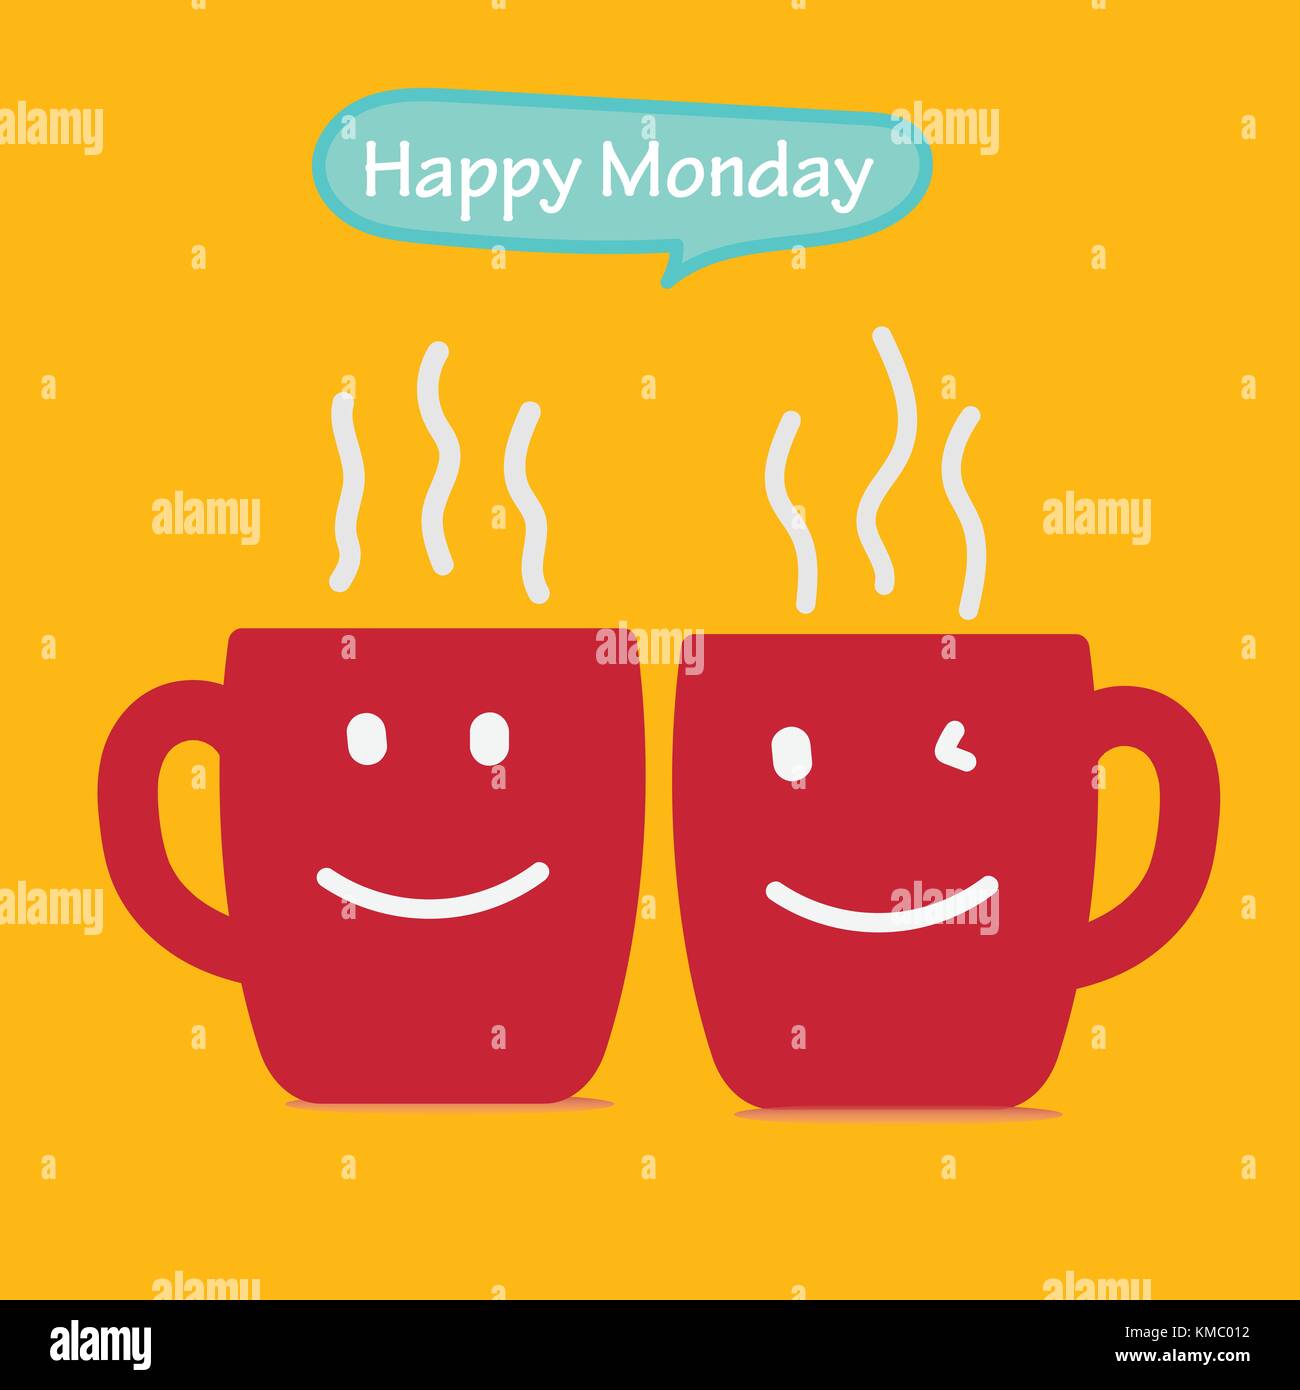 Happy Monday Stock Photos & Happy Monday Stock Images - Alamy